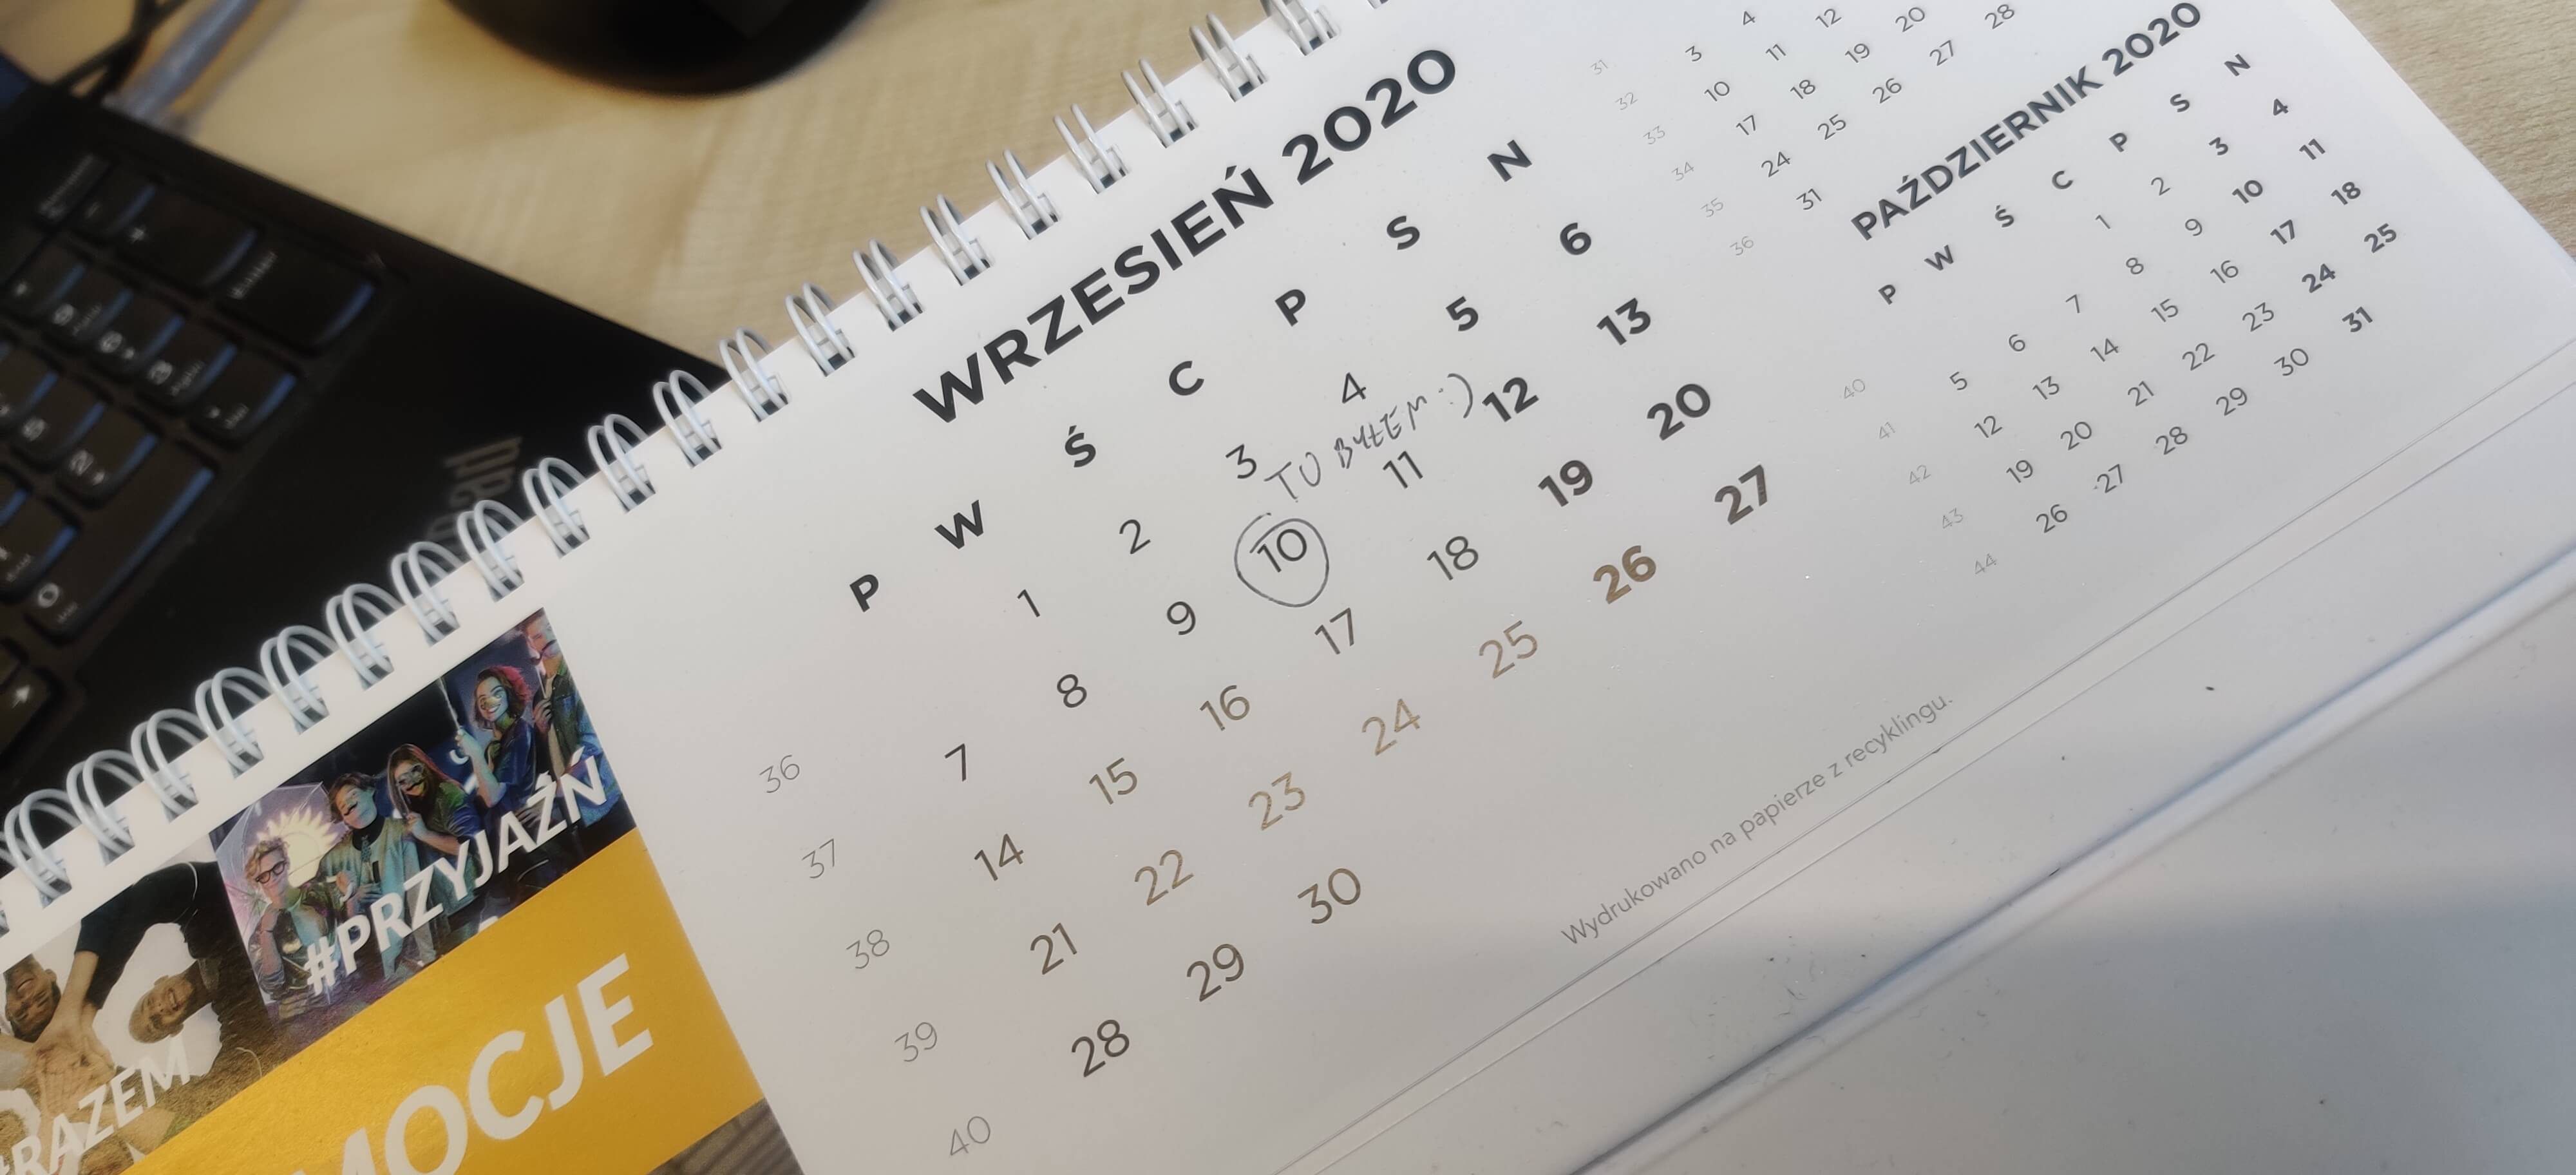 Calendar that stopped on 10th September 2020